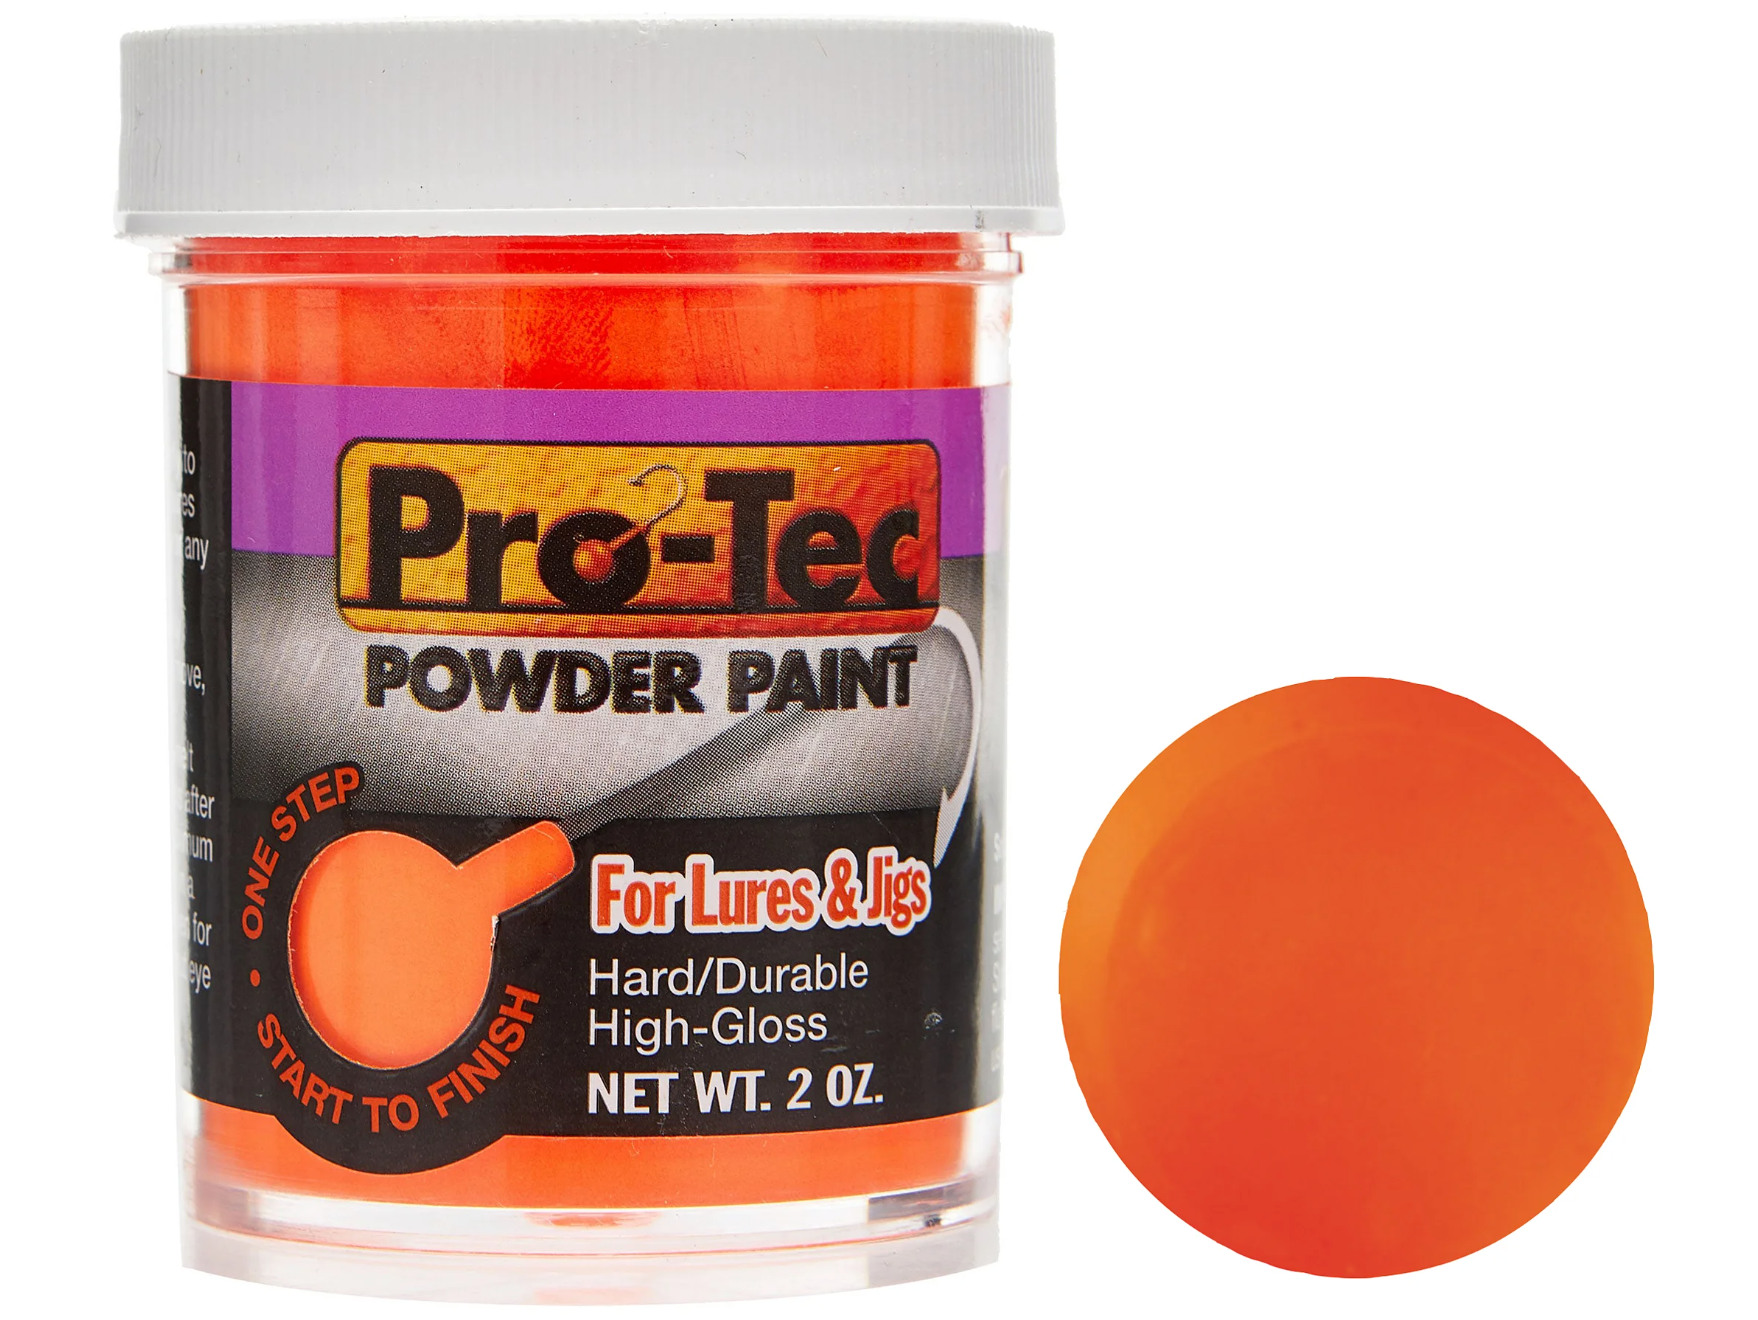 Do-it Pro-Tec Powder Paint (2oz, Assorted Colors)